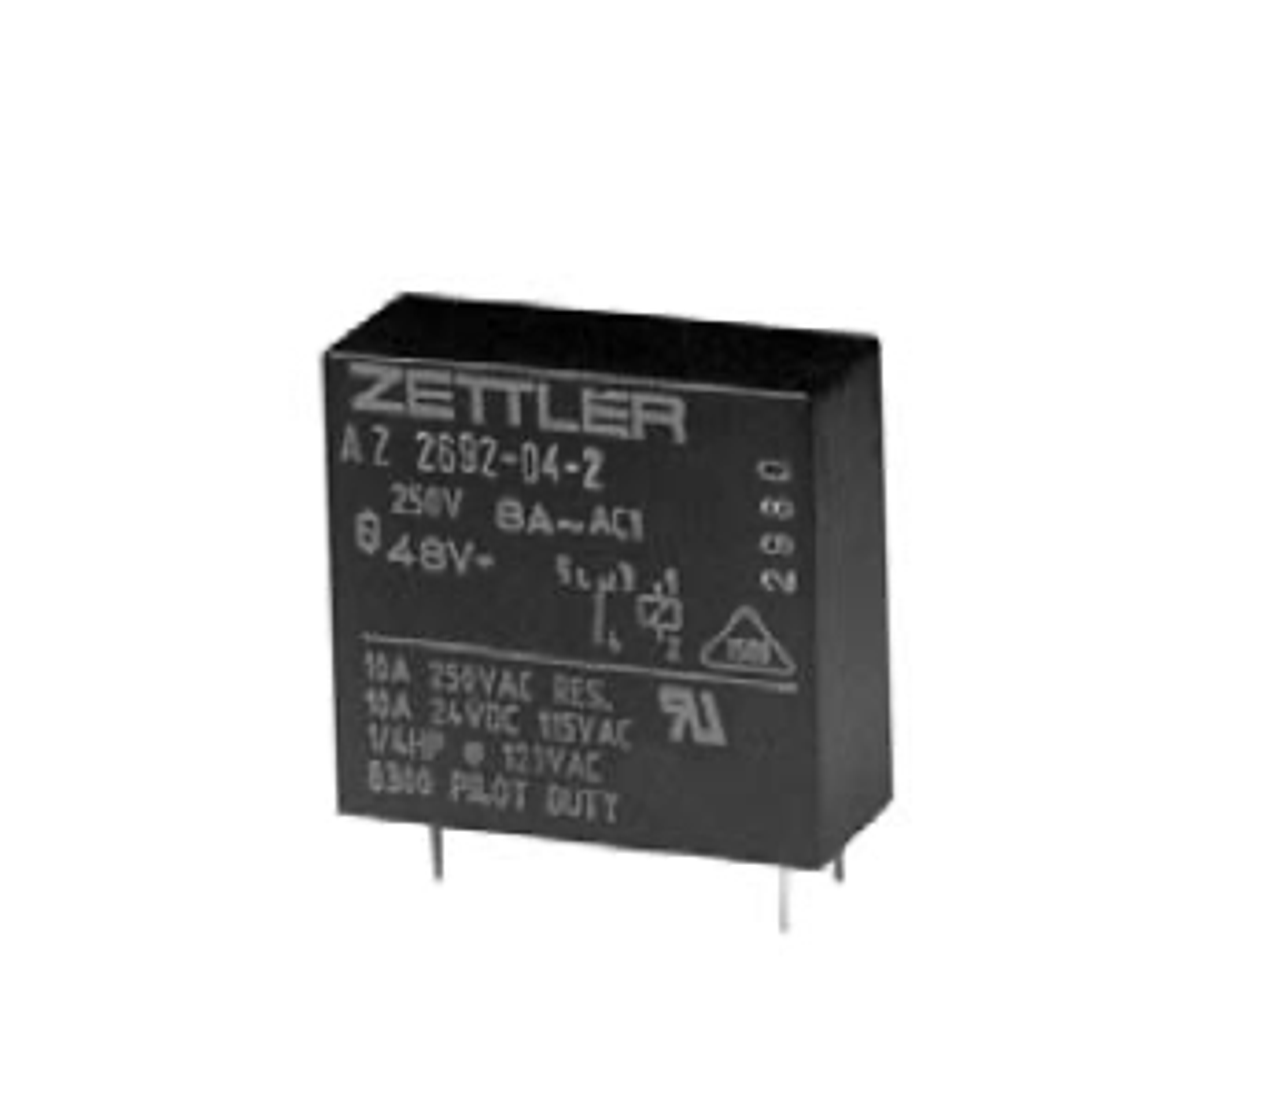 American Zettler AZ692-04-2 Power Relay